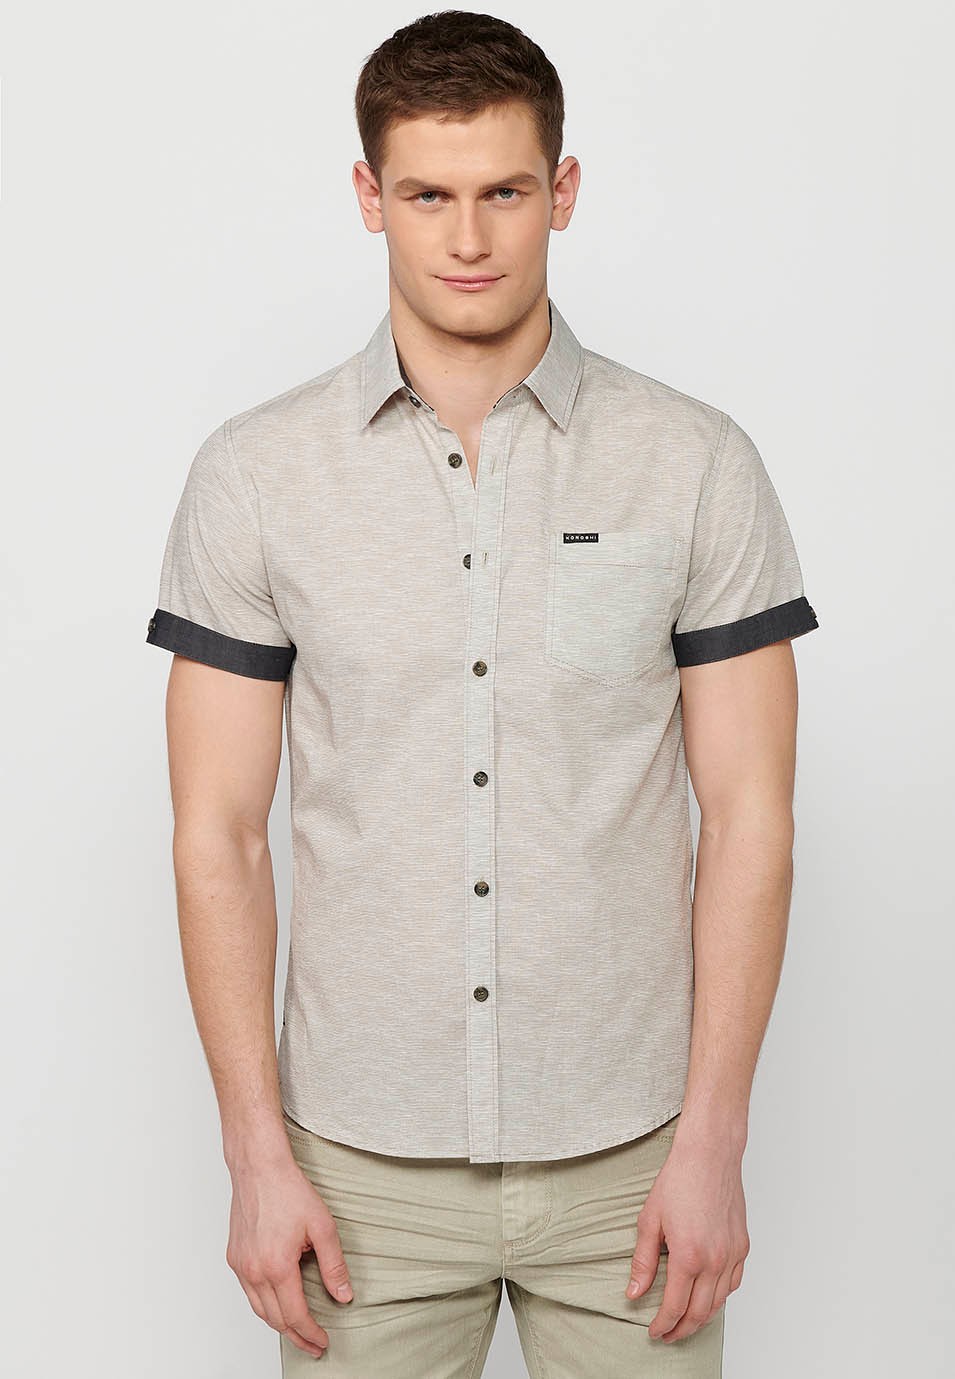 Chemise boutonnée manches courtes en coton, coloris gris pour homme